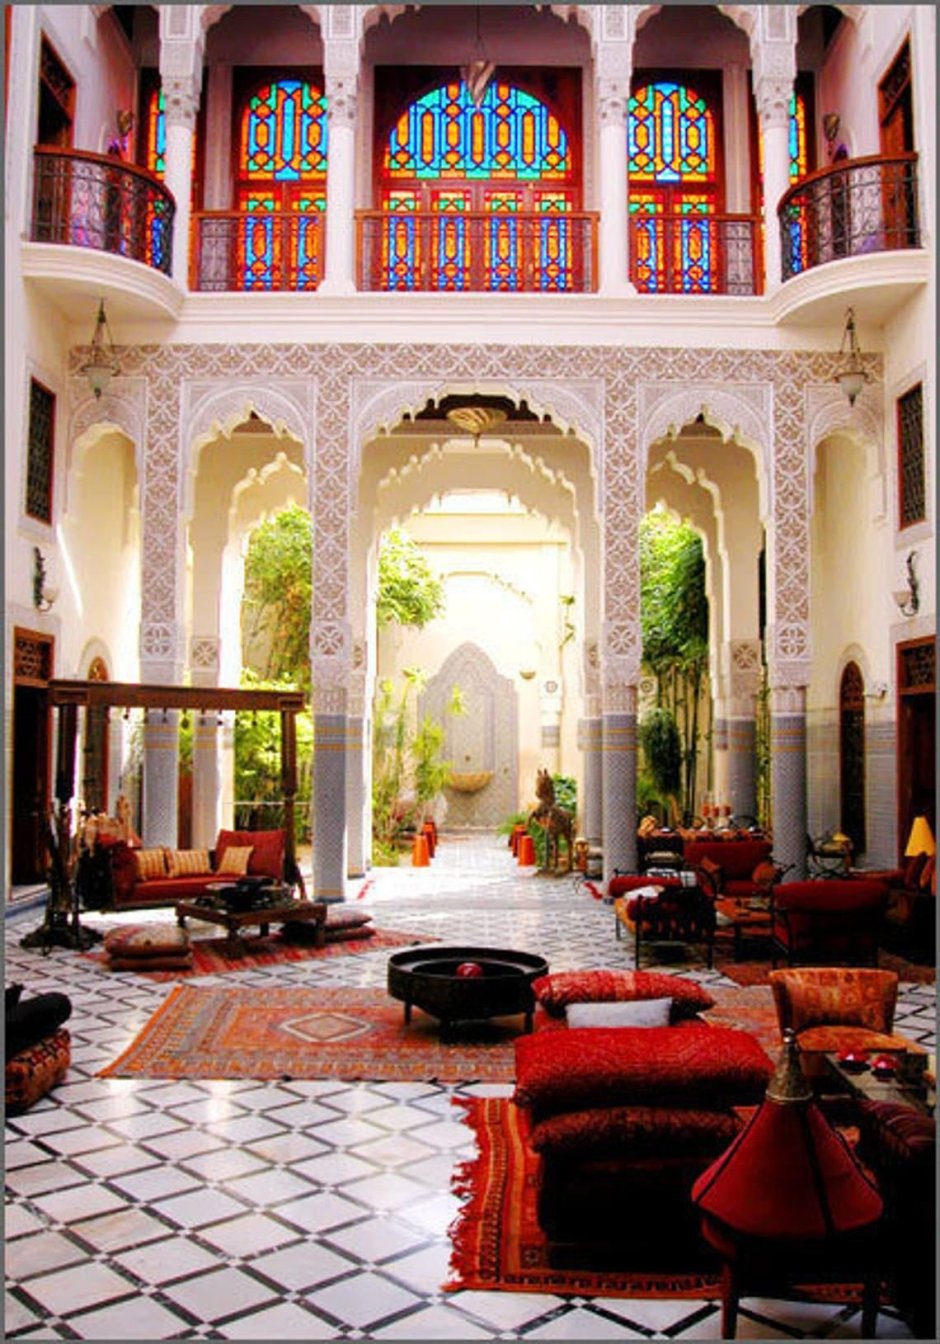 Мавританская архитектура Марокко